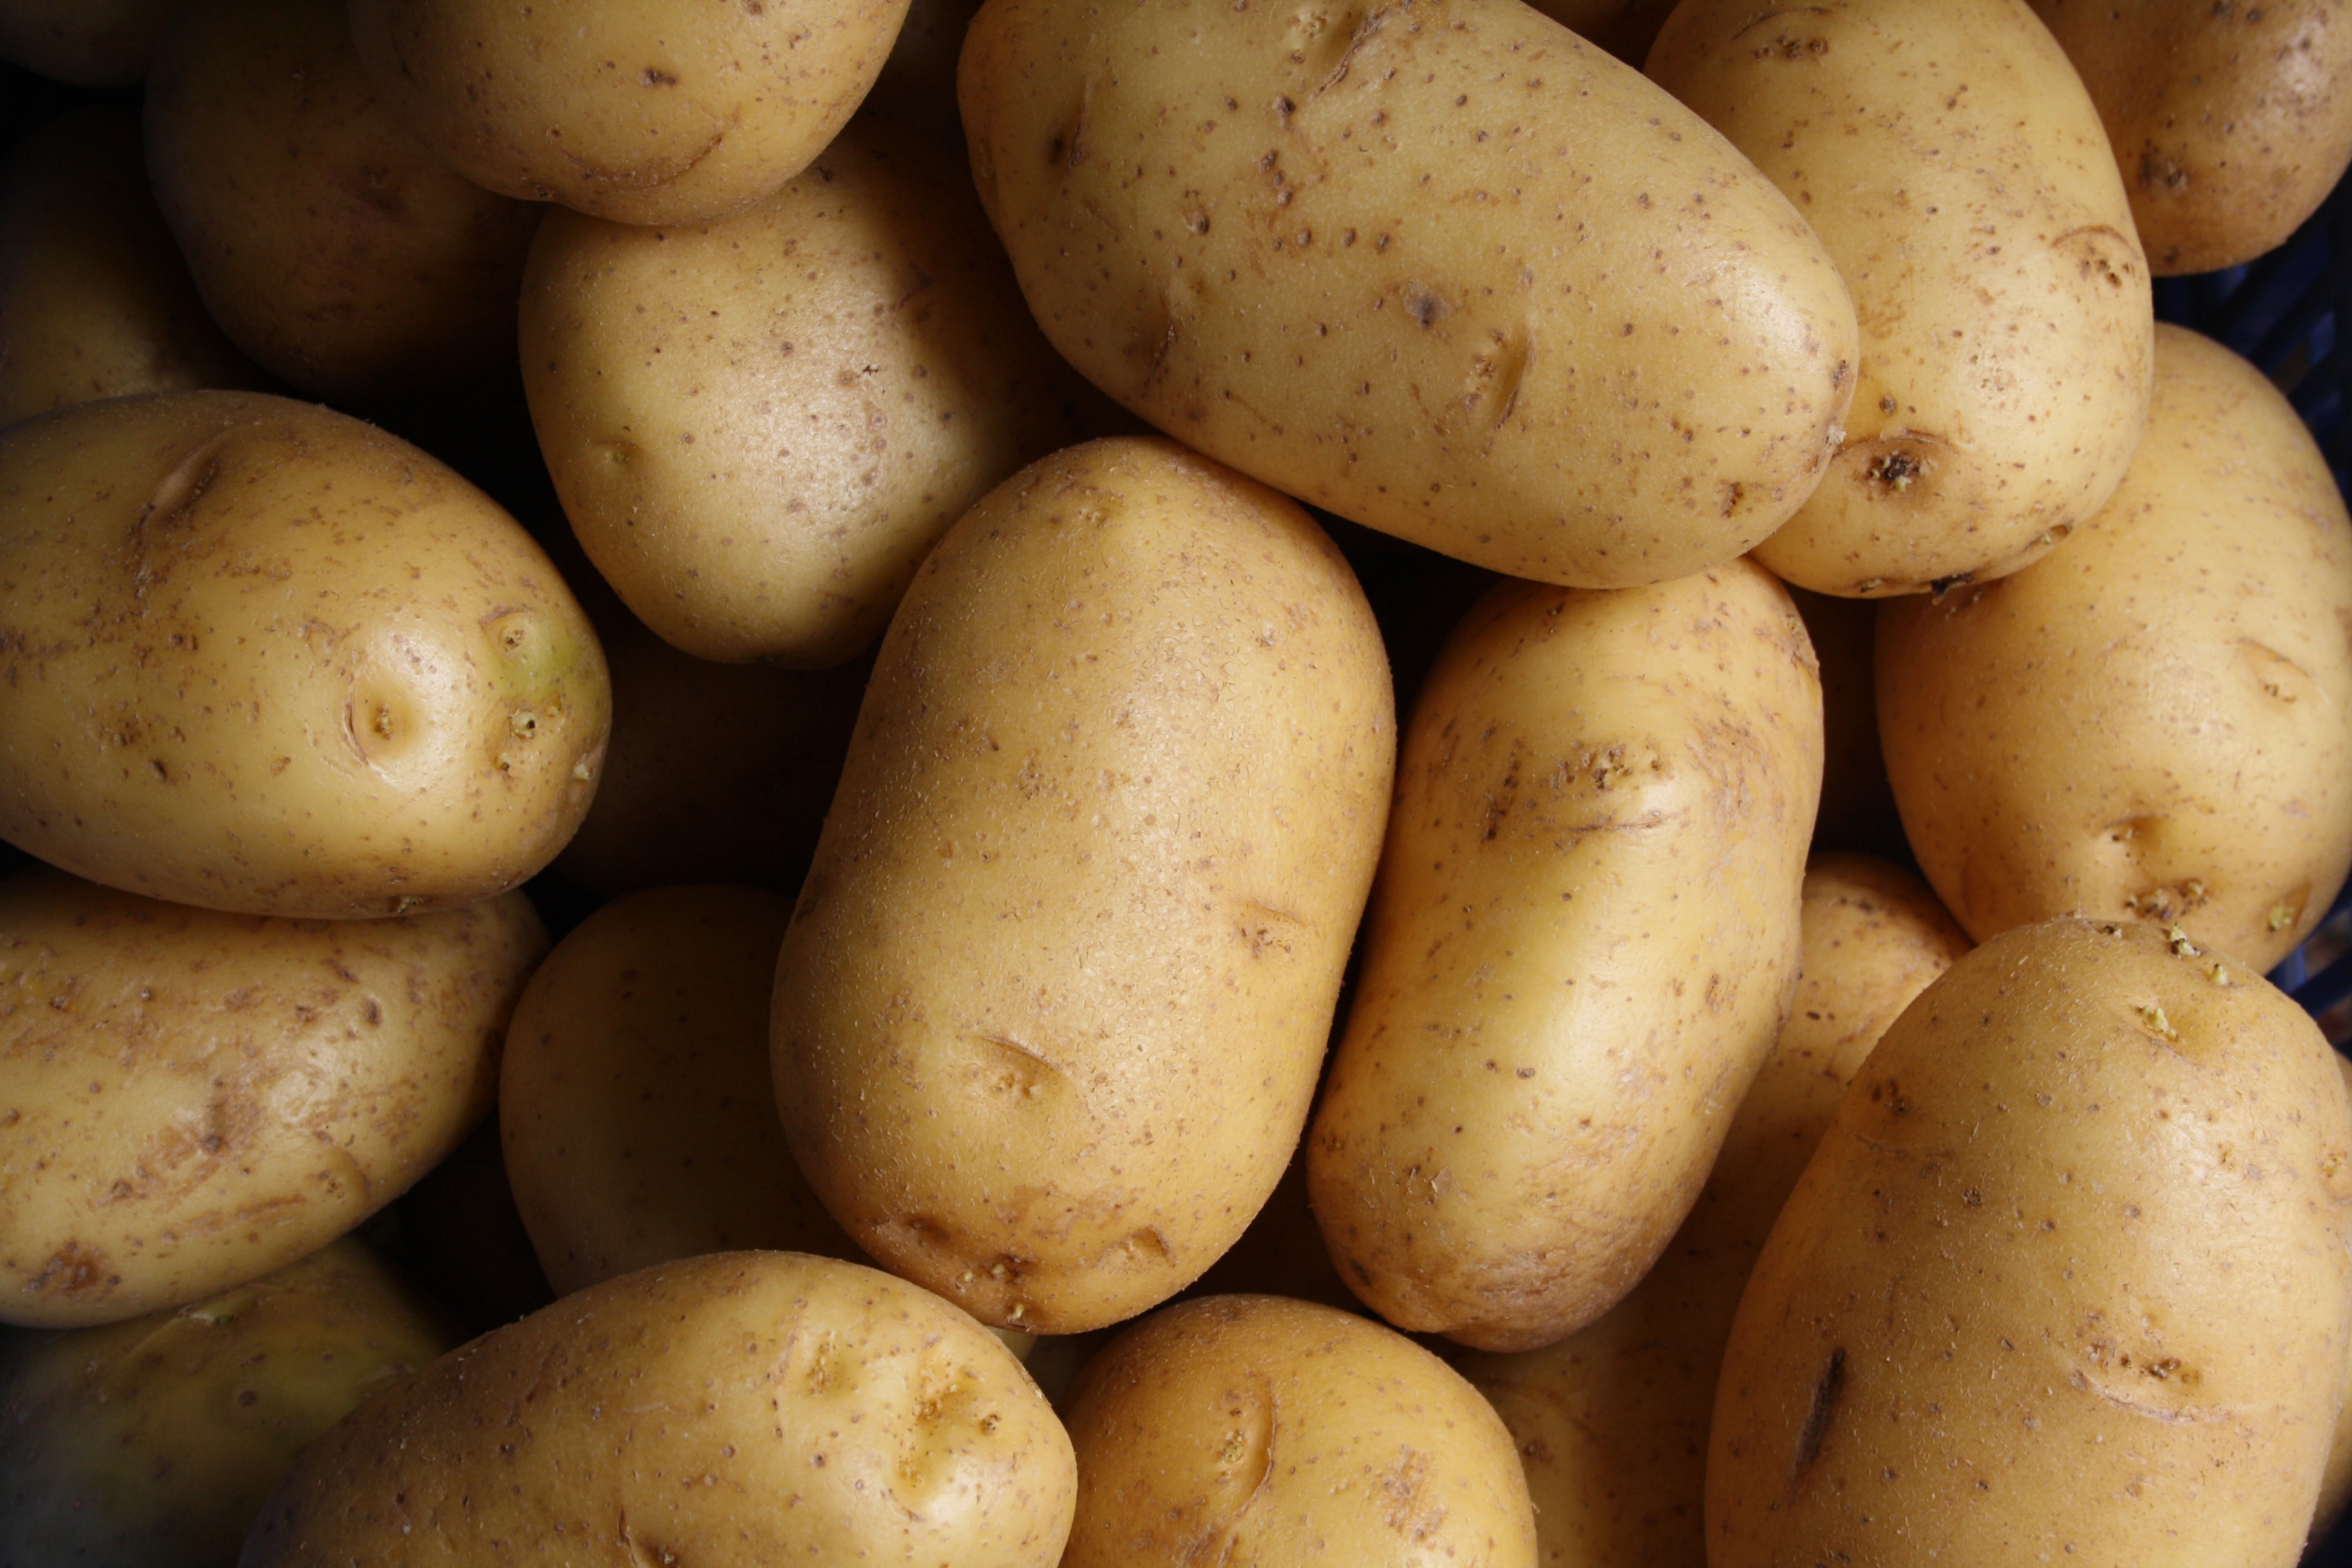 Comment empêcher la germination des pommes de terre : 5 conseils